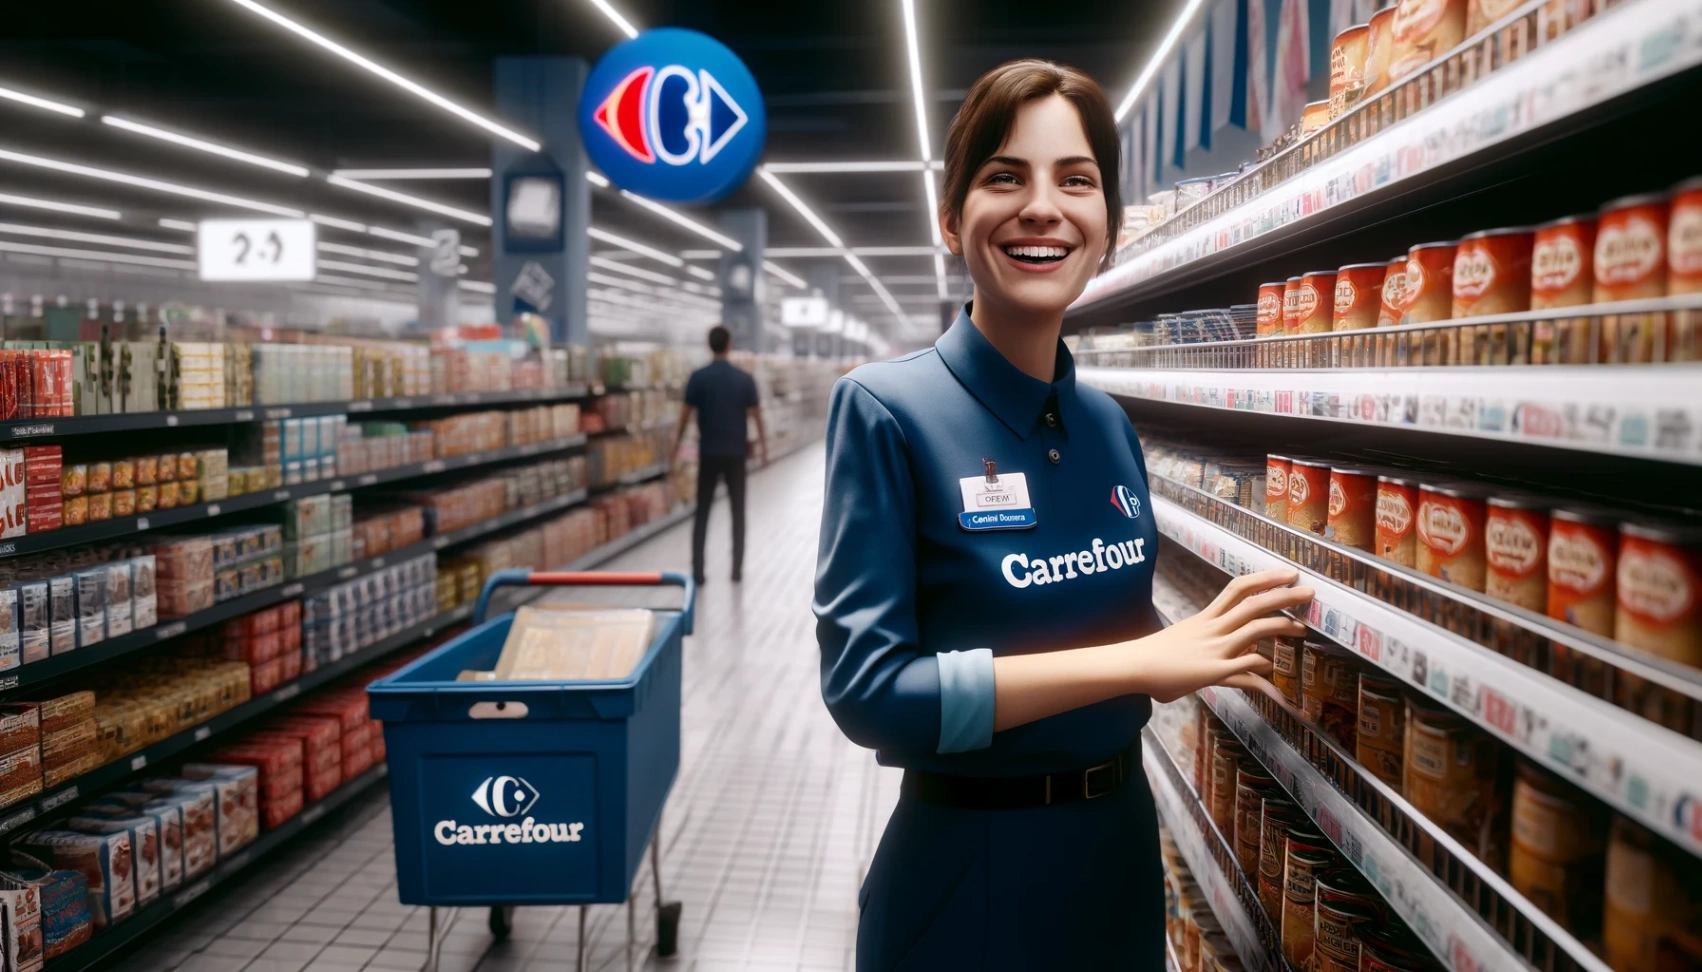 Carrefourin avoimet työpaikat - Opi hakemaan